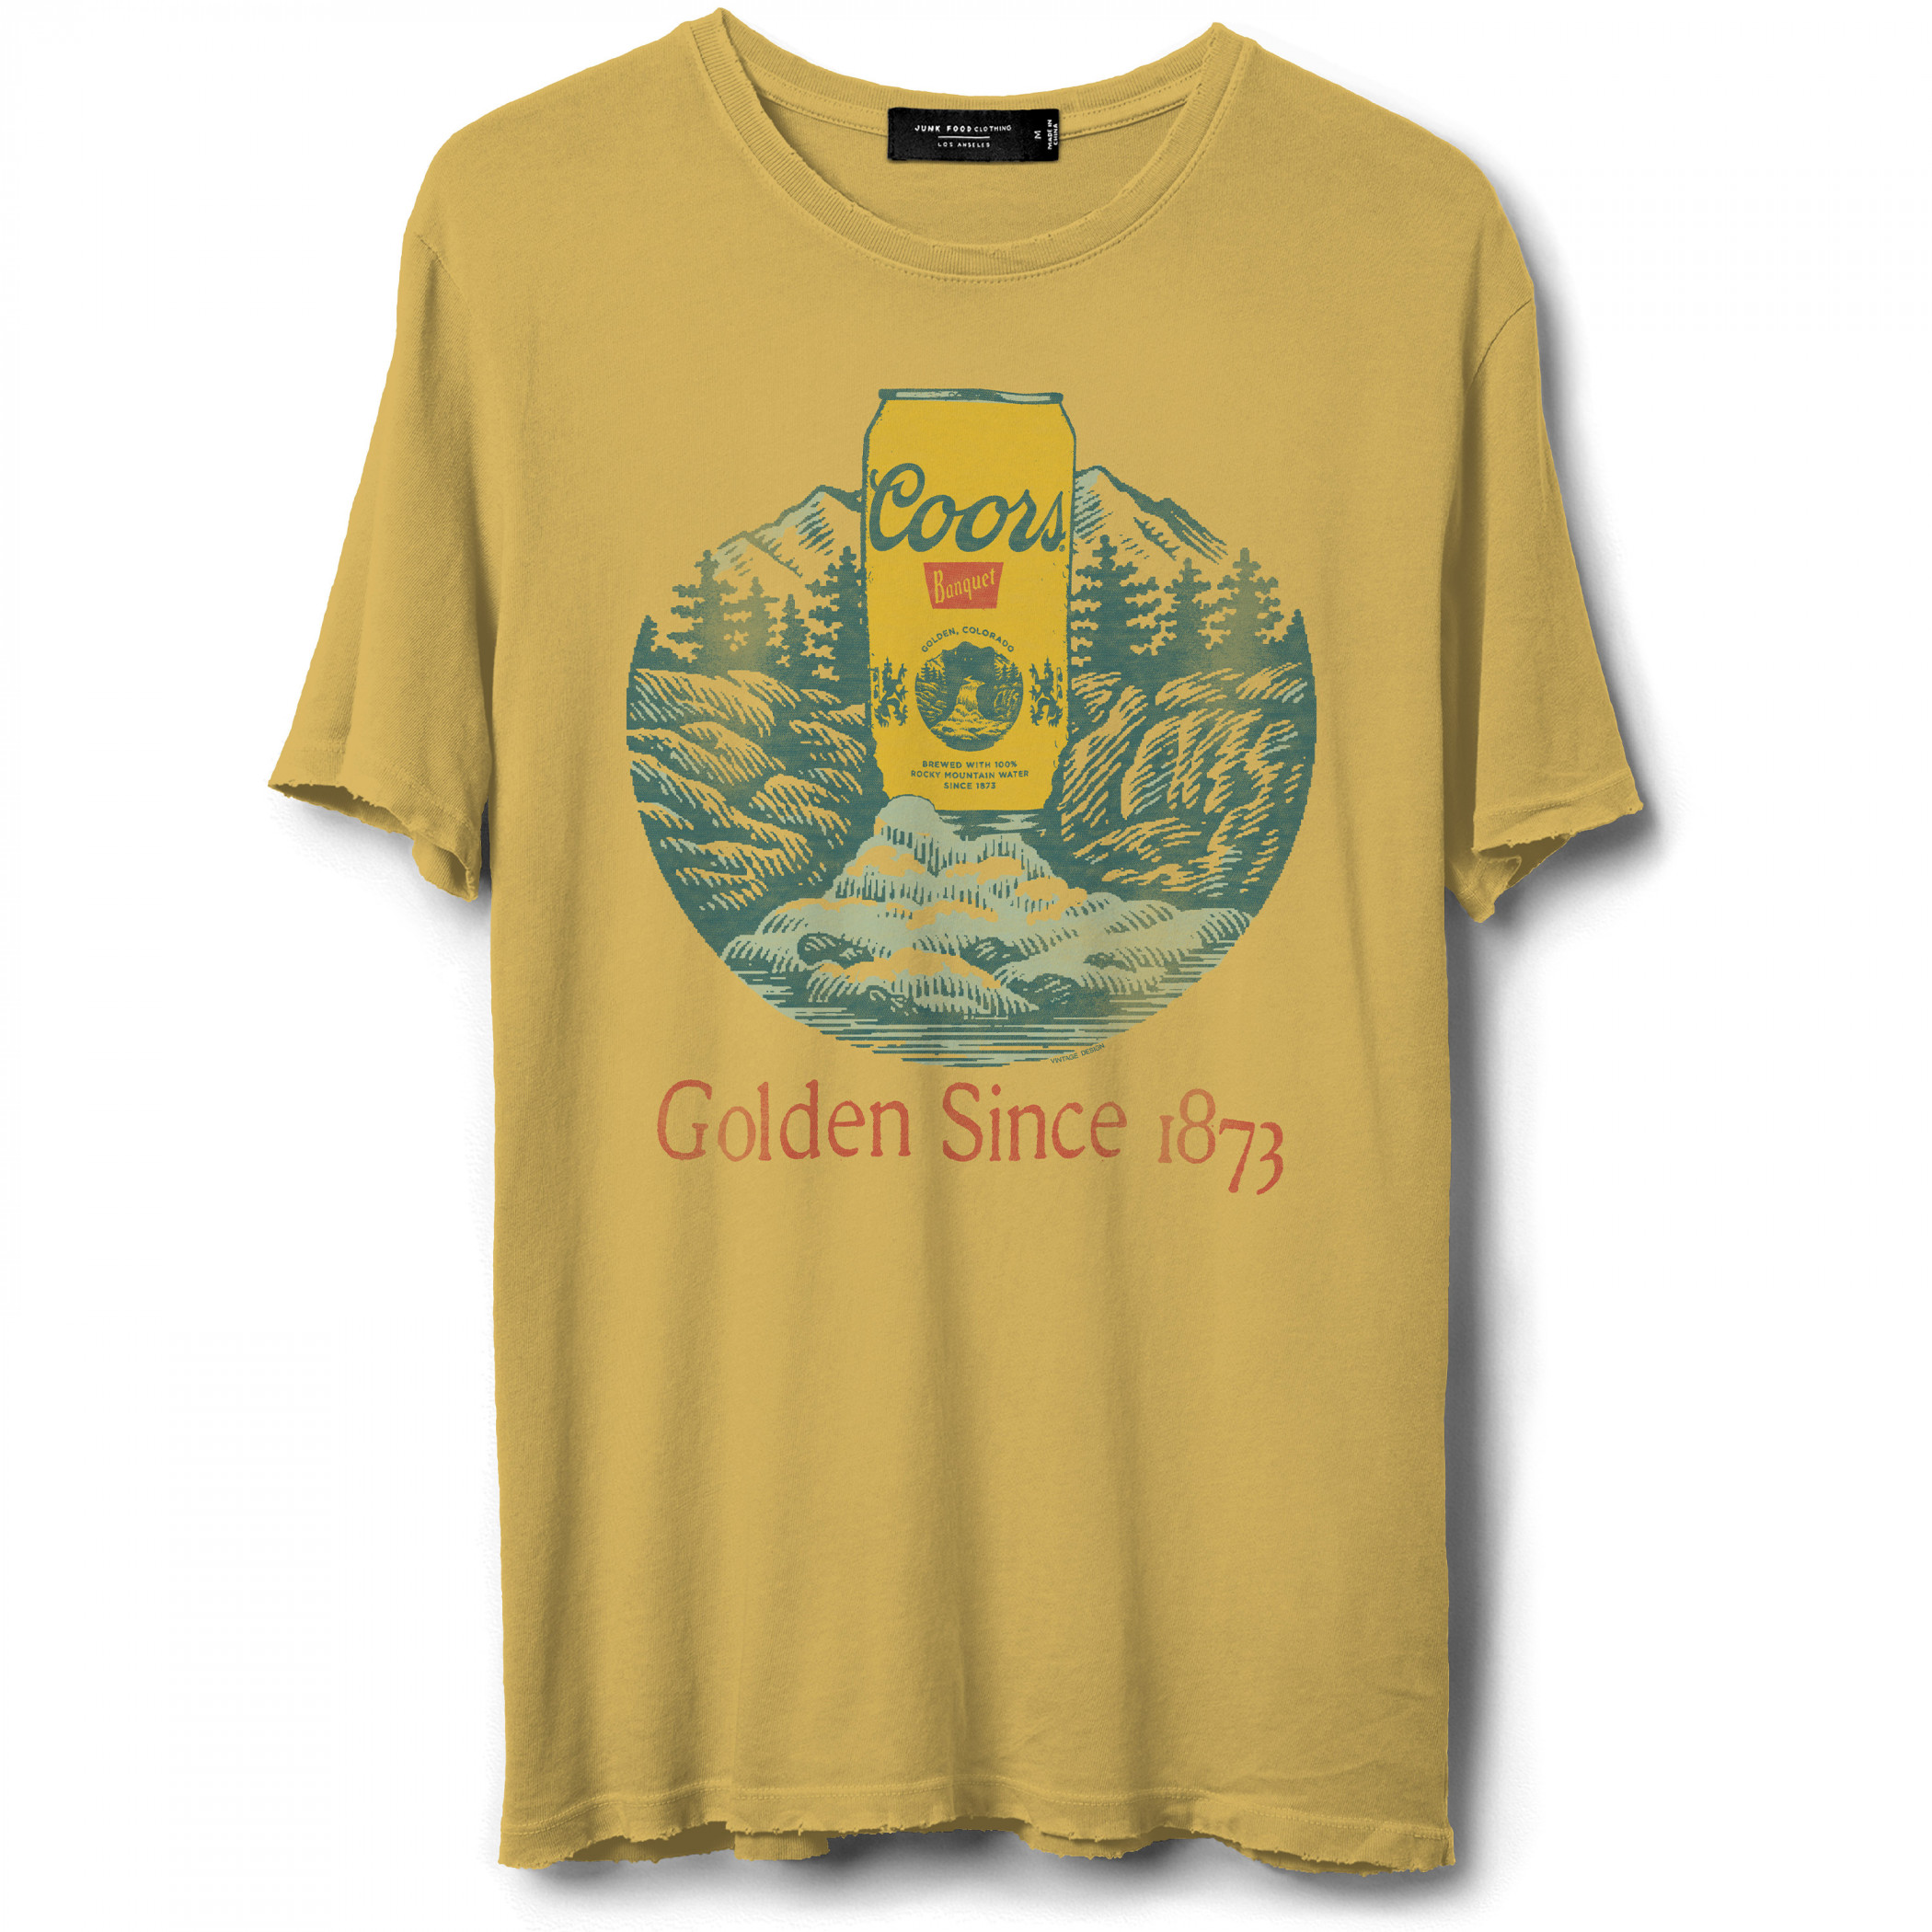 Coors Golden Banquet Rocky Rivers T-Shirt by Junk Food